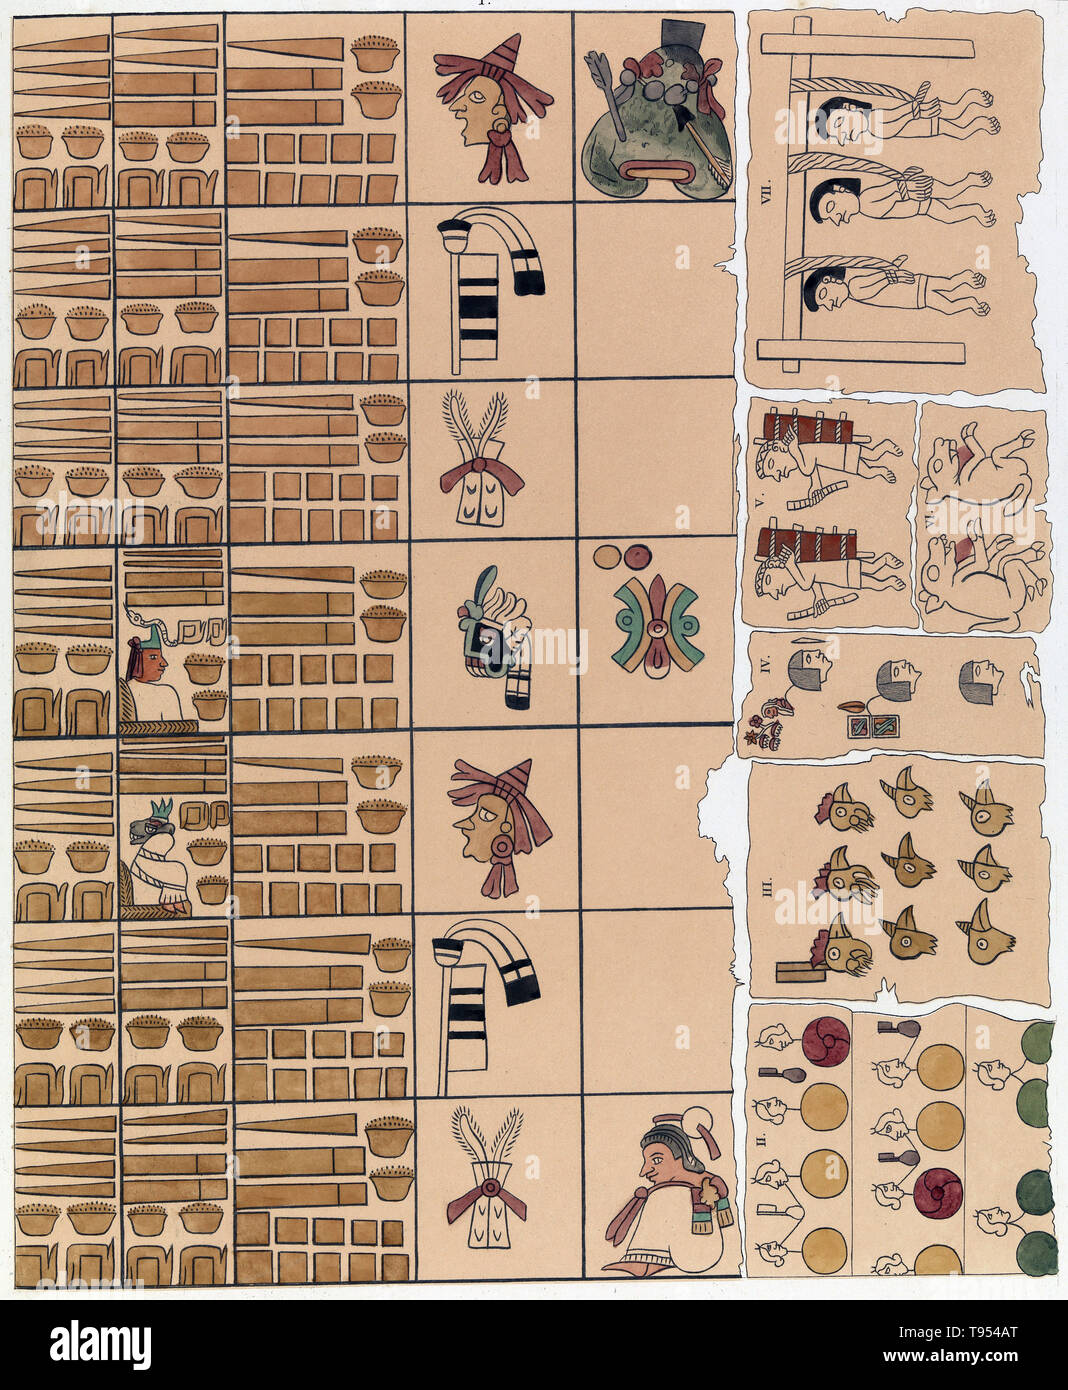 L'écriture pictographique aztèque est un pré-colombienne et idéographiques avec système d'écriture syllabique logogrammes et certains signes. La culture aztèque, également connu sous le nom de culture Mexicas, était une culture méso-américaine qui ont fleuri dans le centre du Mexique dans l'après-période classique de 1300 à 1521. La plupart des codex aztèques ont été brûlées par tlatoani aztèque (empereurs) pour des raisons idéologiques, ou par le clergé espagnol après la conquête de l'Amérique centrale. Codices Aztèques restants comme le Codex Mendoza, le Codex Borbonicus, et le Codex Osuna étaient écrits sur deer masquer et de fibres végétales. Banque D'Images